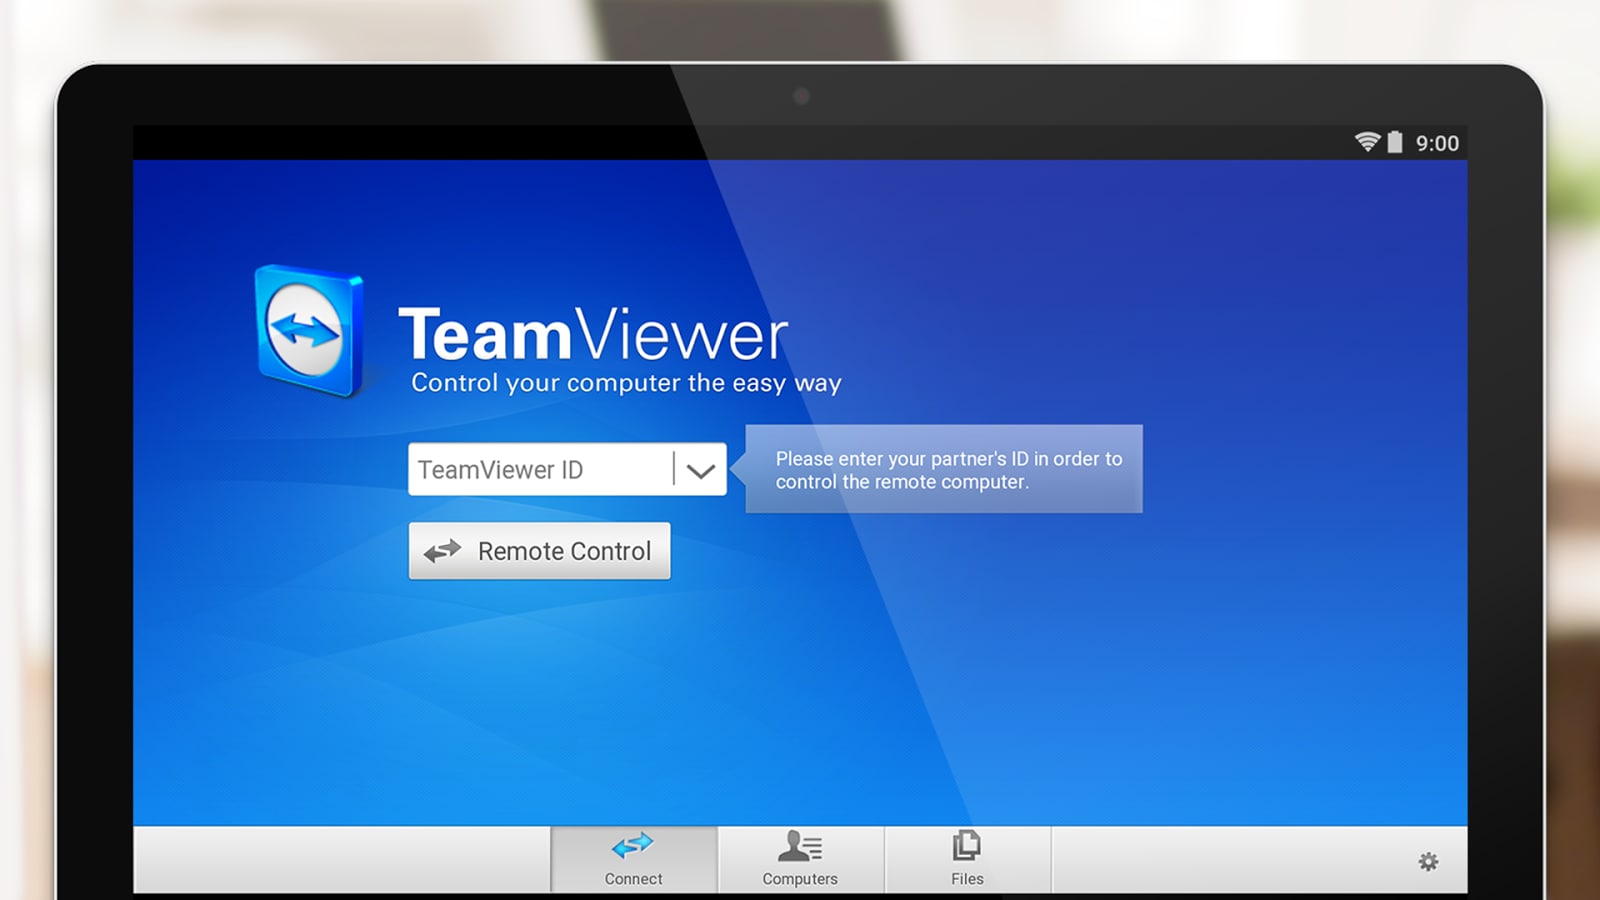 teamviewer mac 10.10.5 download